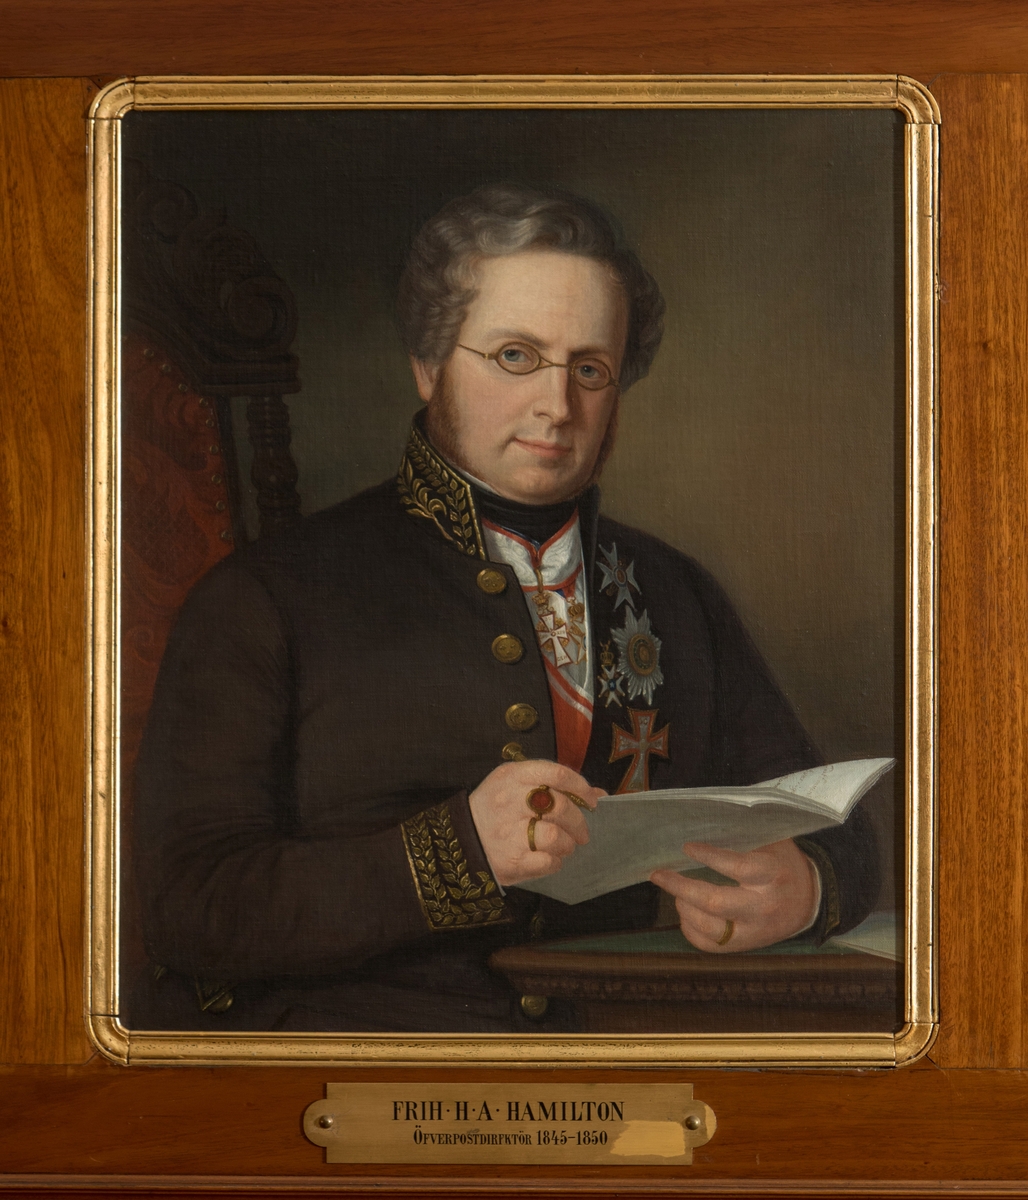 Oljemålning, porträtt av överdirektören friherre H. A. Hamilton. Hamilton var överpostdirektör dvs chef för Postverket 1845-1850.

En mässingsskylt med text: "Frih. H.A. Hamilton Öfverpostdirektör 1845-1850" hör till tavlan.